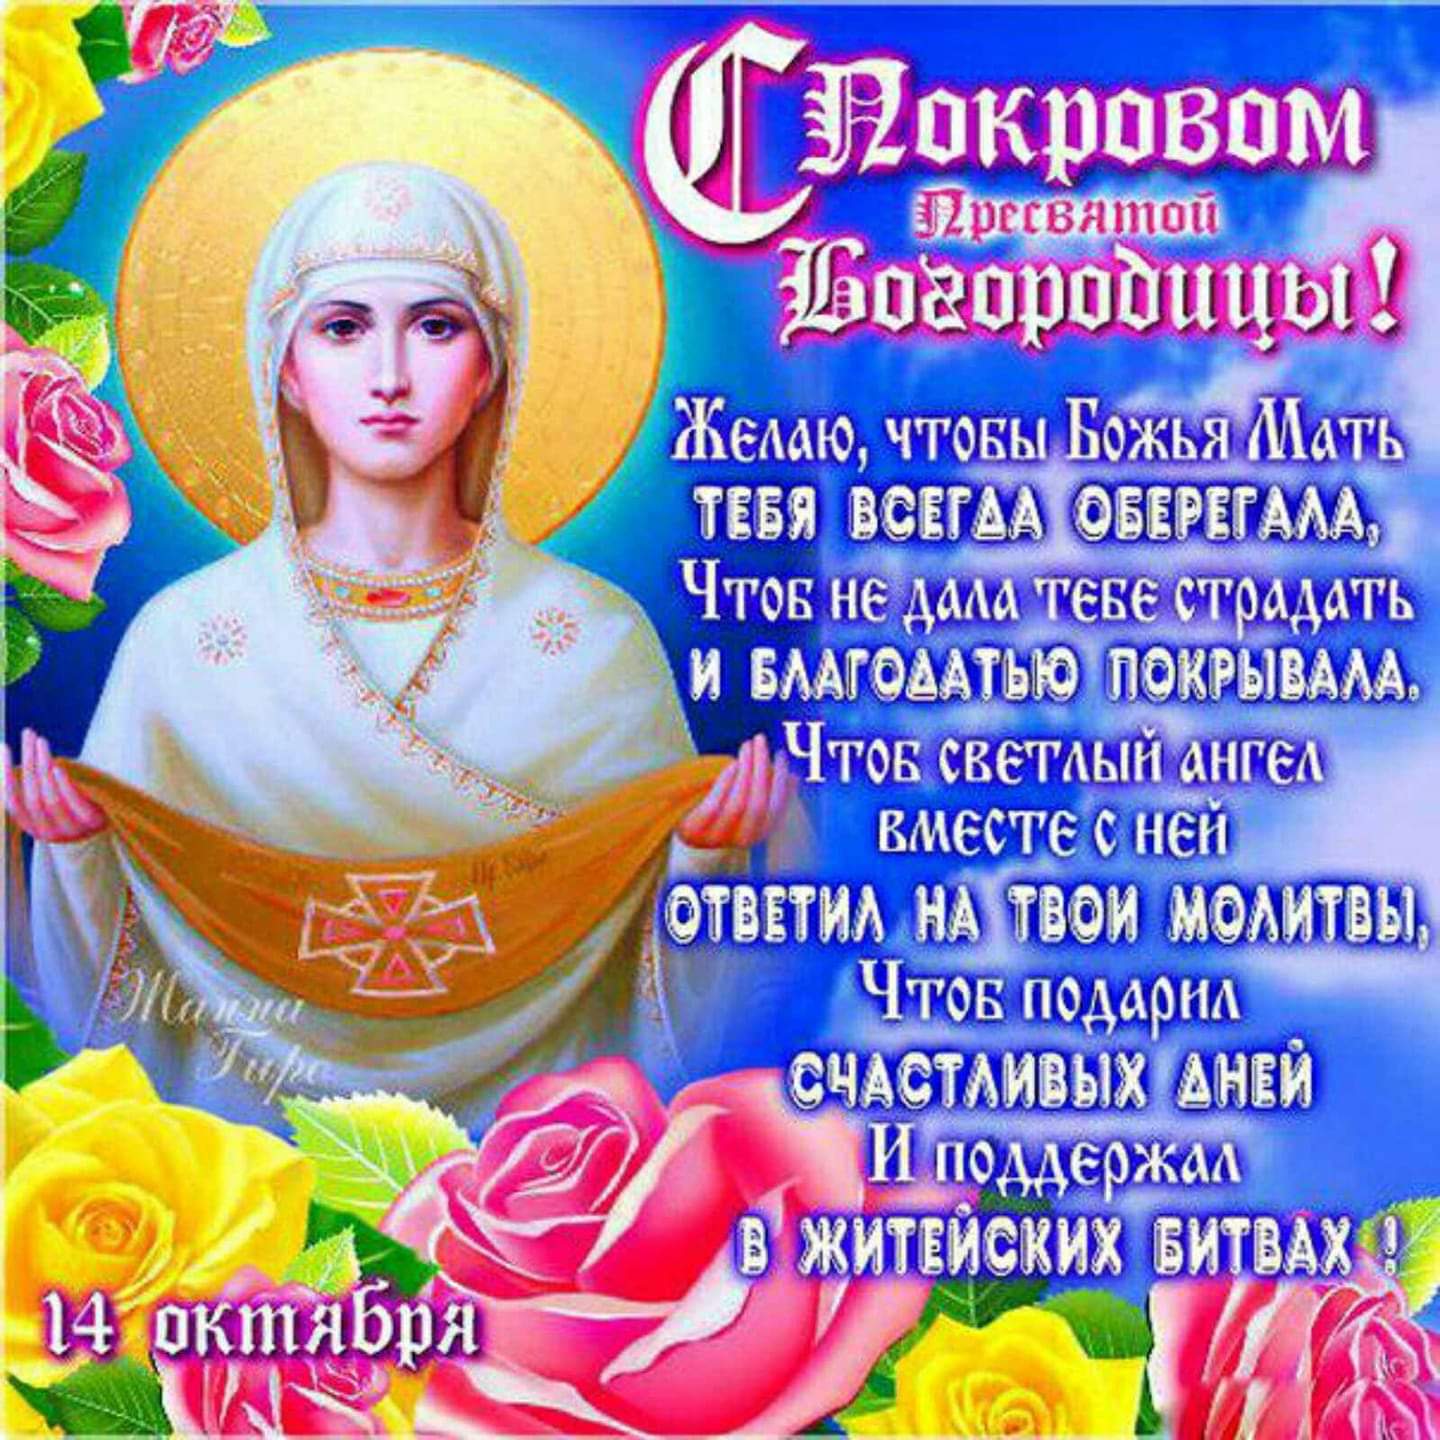 14 октября праздник Покрова Пресвятой Богородицы